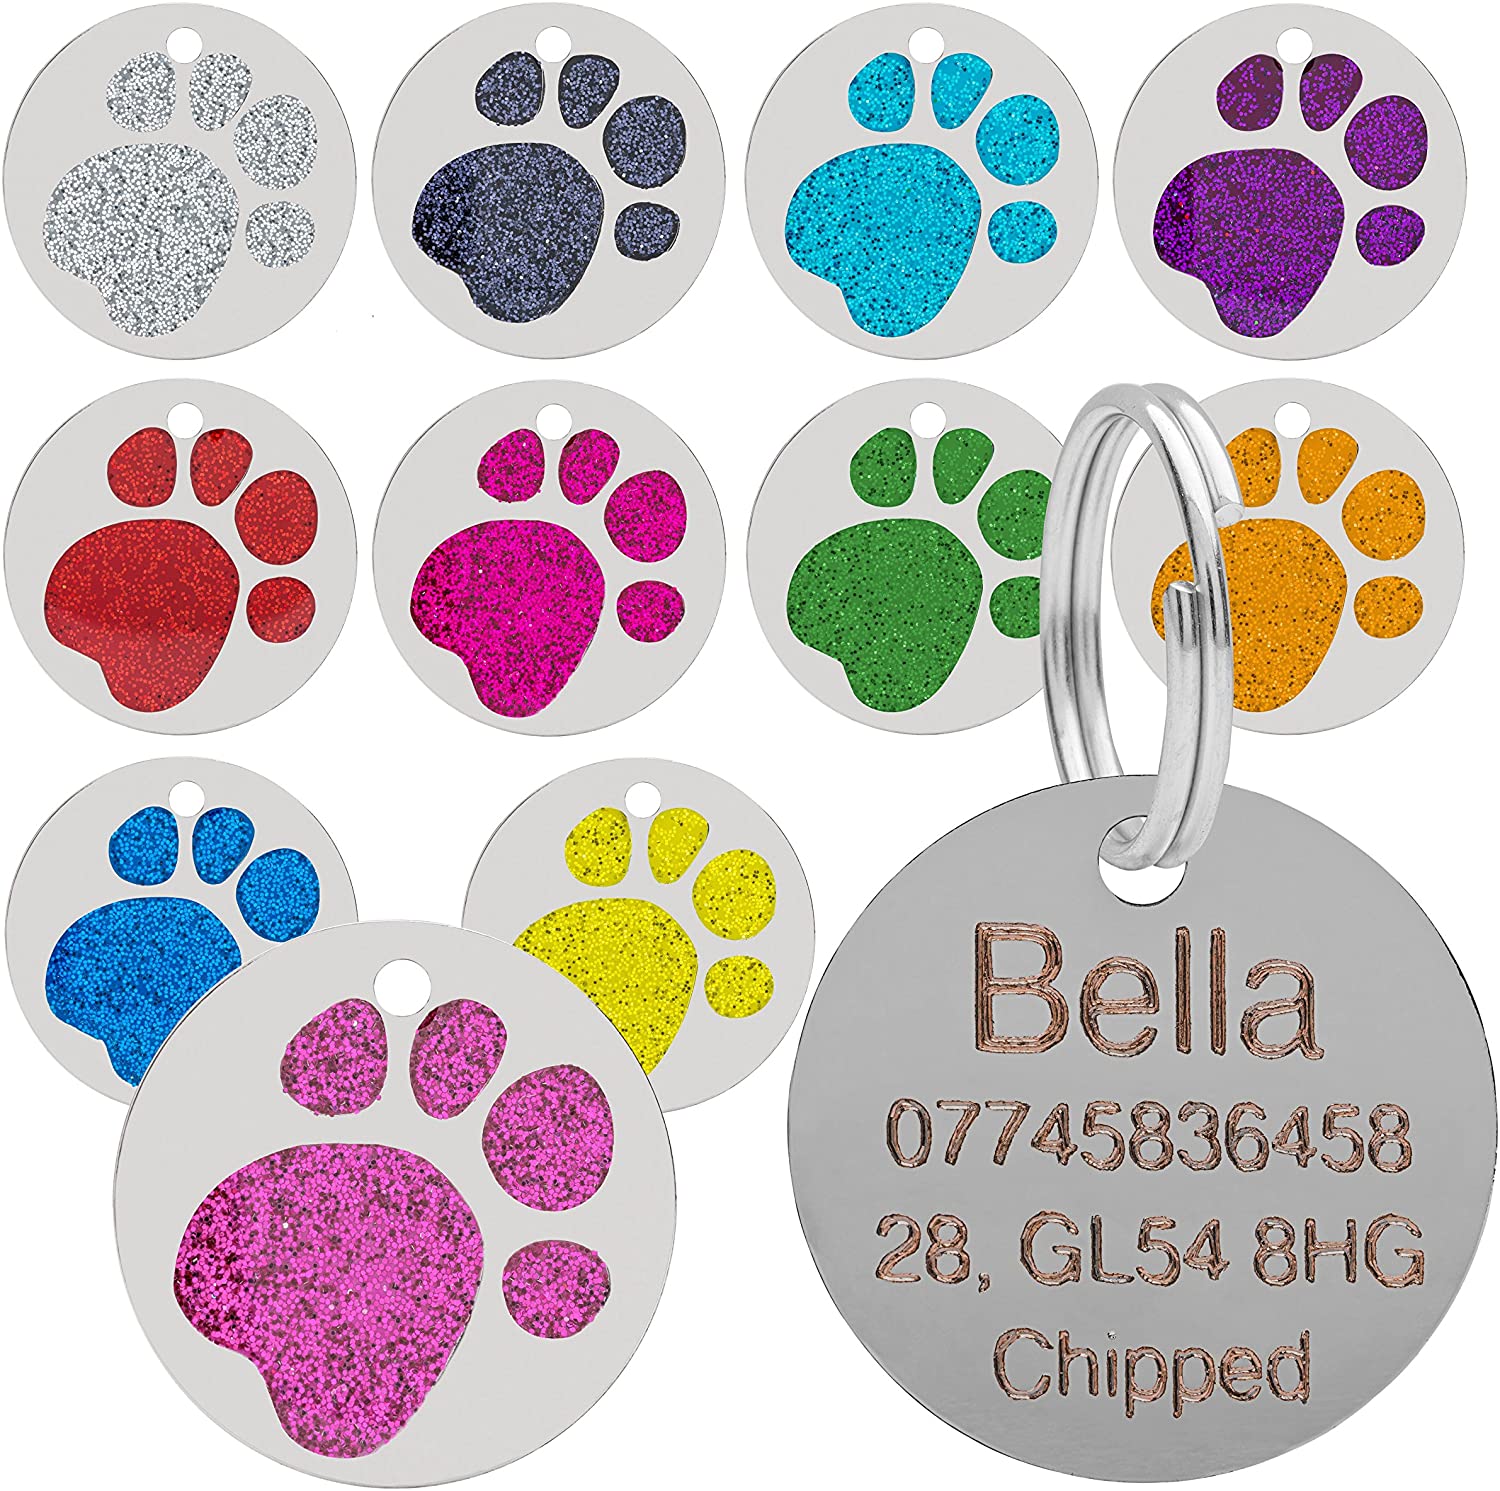  Placa para mascotas, con diseño de huella de pata, brillante, para gatos y perros, 25 mm 